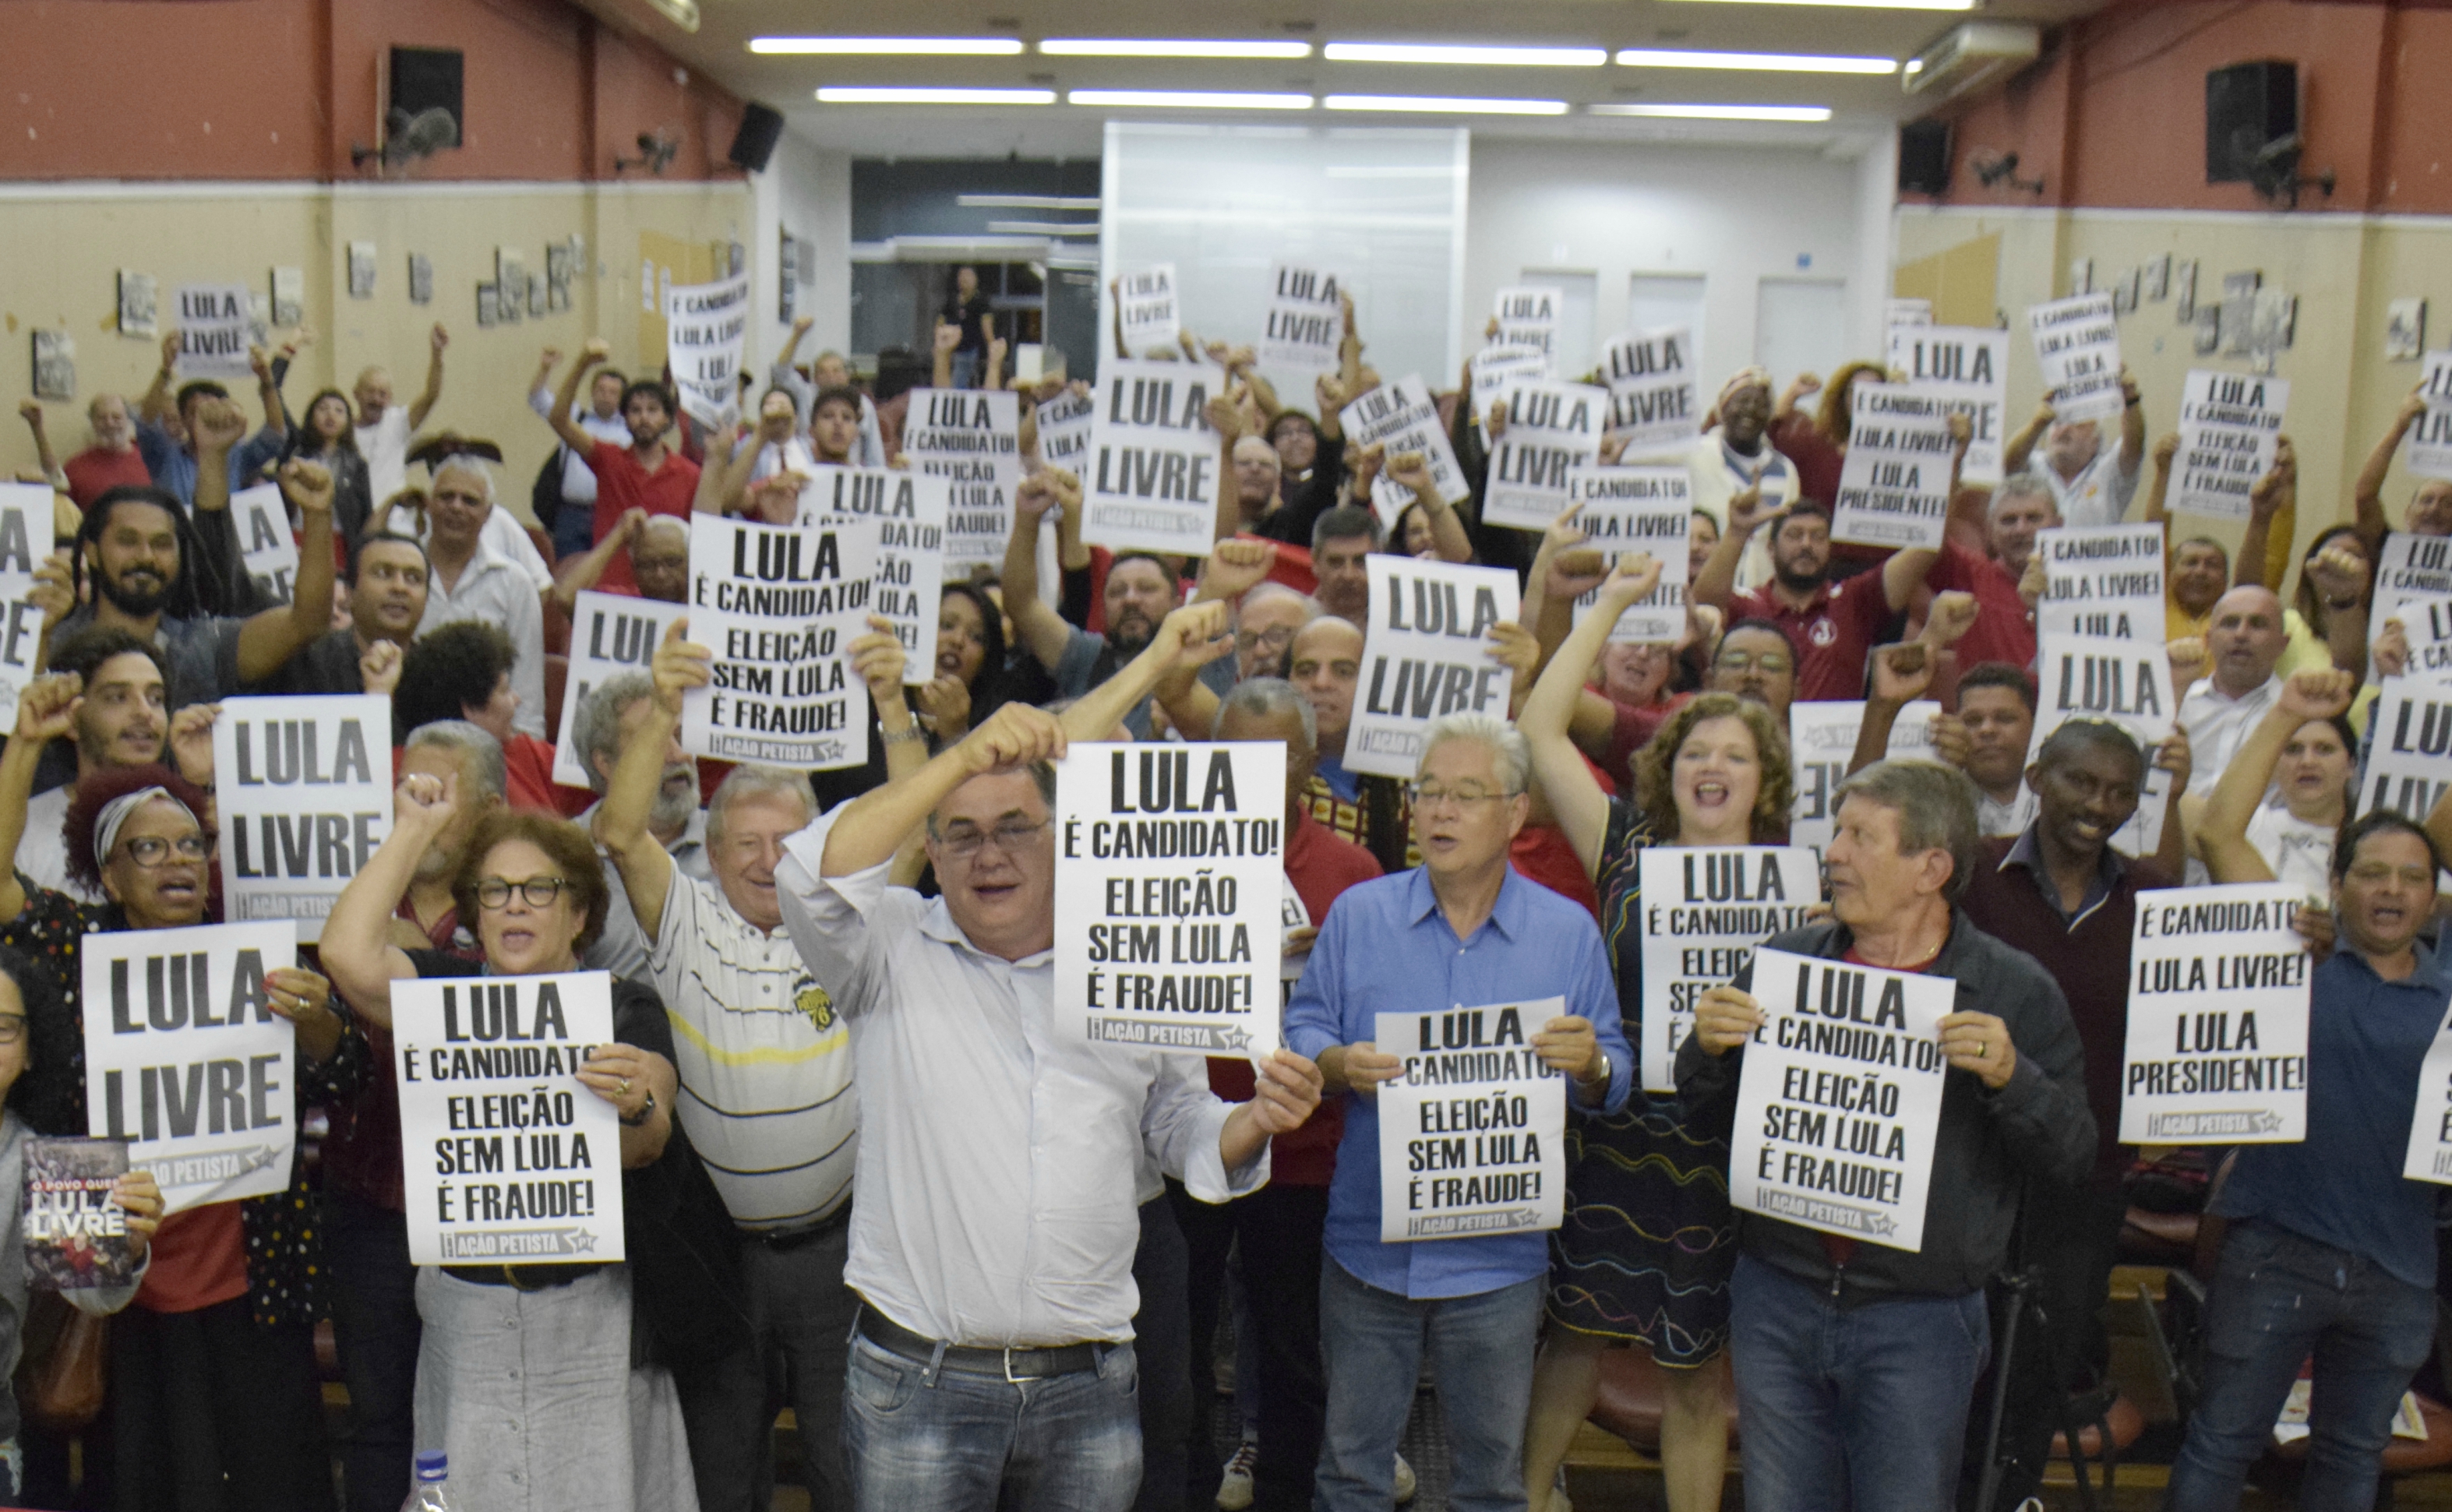 Plenária mostra grande mobilização por Lula Livre em São Paulo